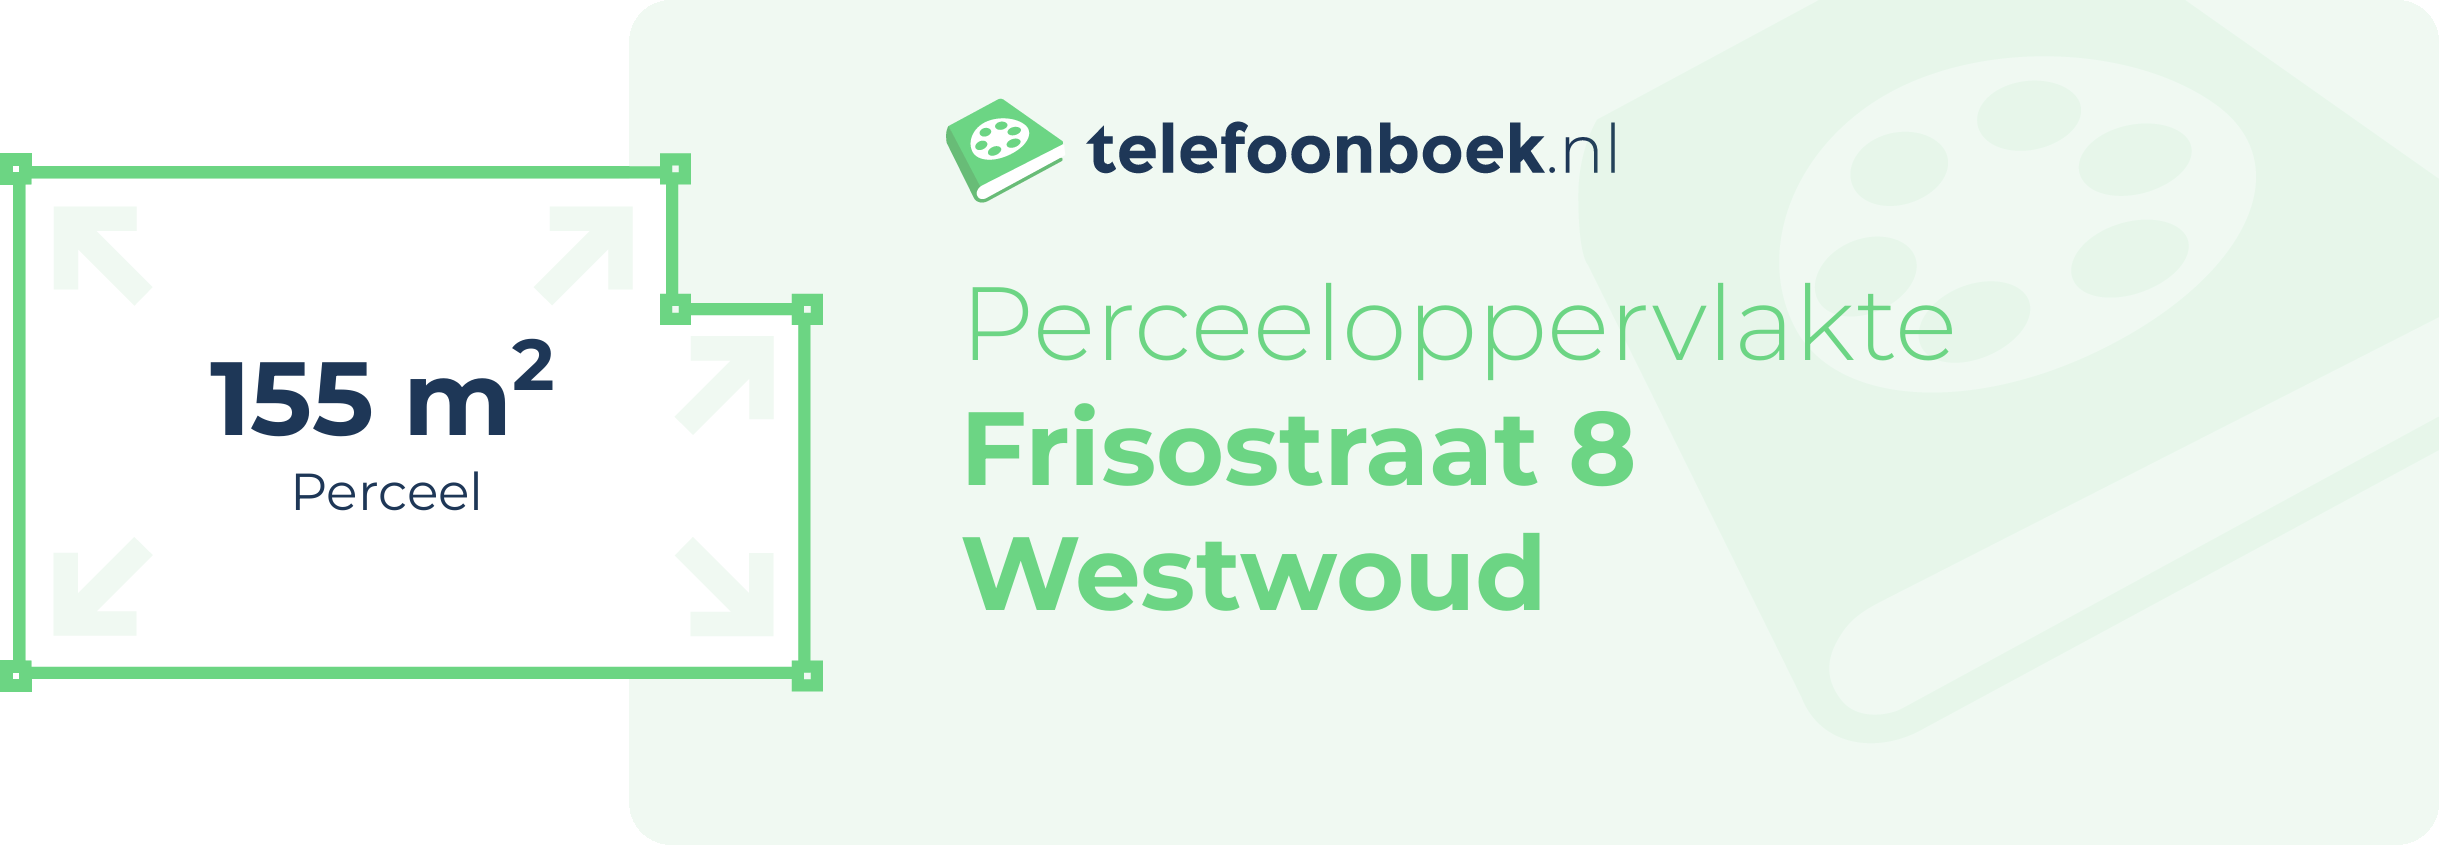 Perceeloppervlakte Frisostraat 8 Westwoud